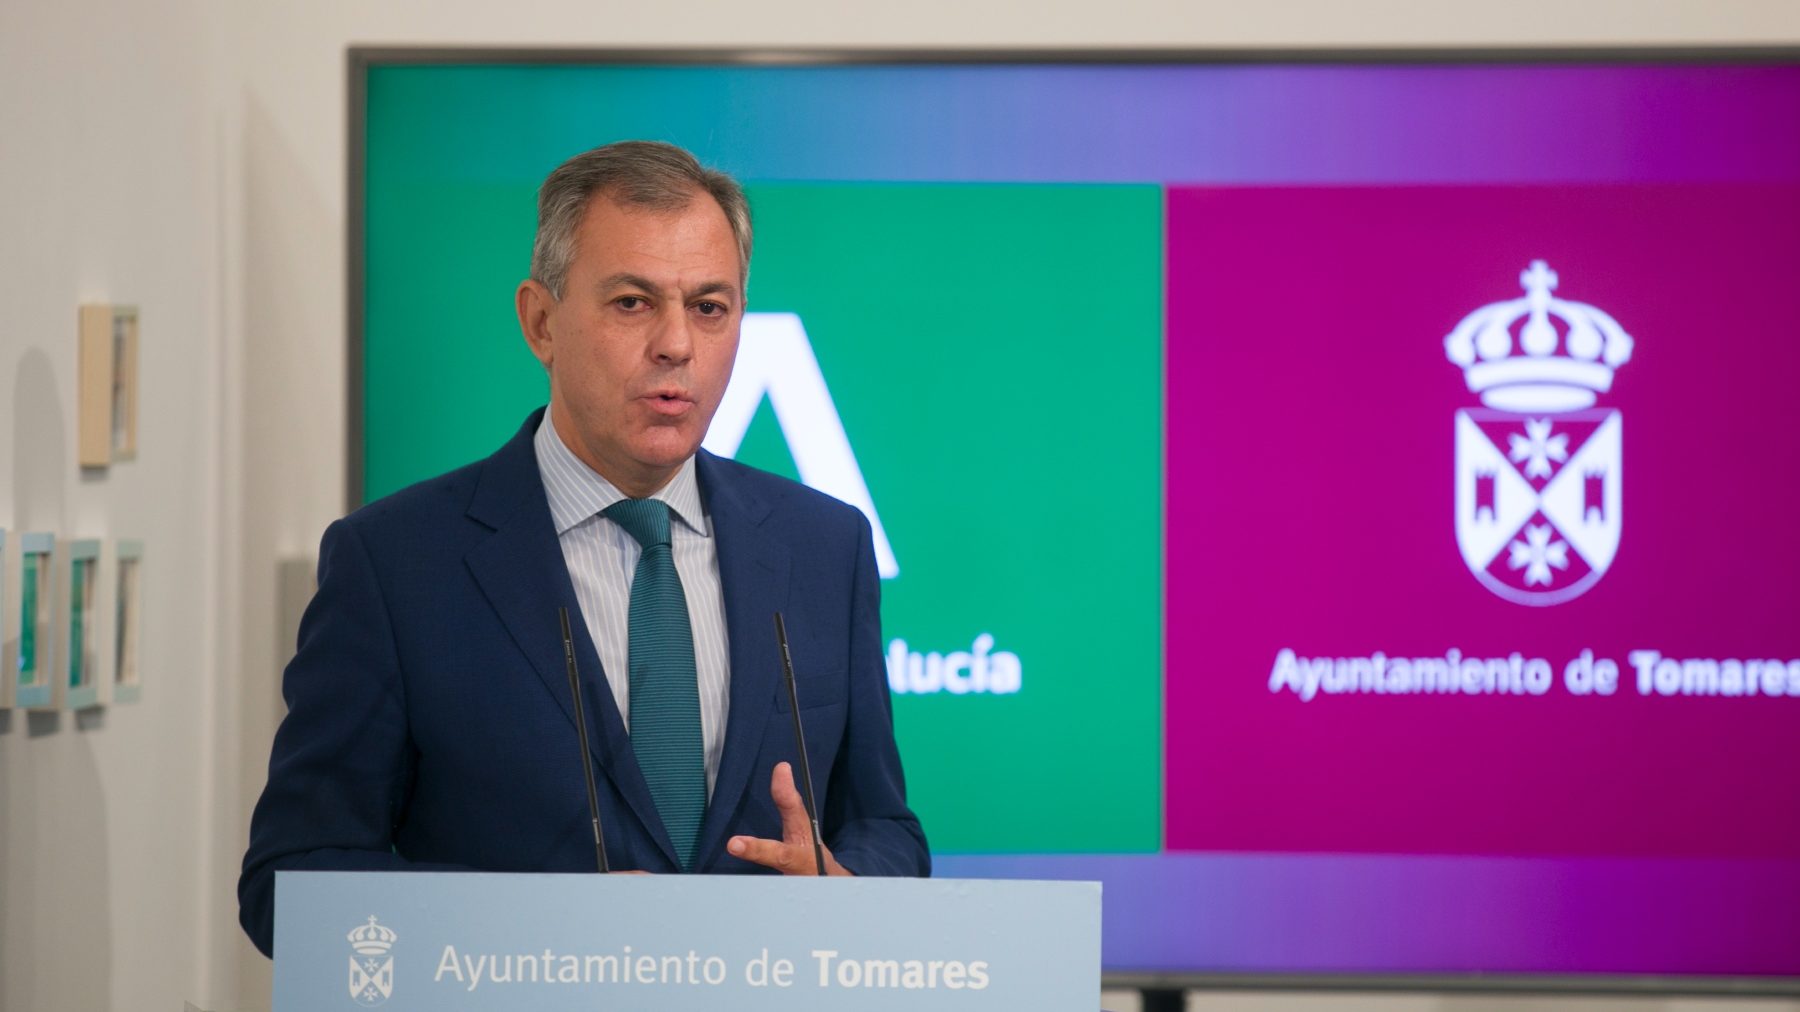 El alcalde de Tomares, próximo candidato del PP a la Alcaldía de Sevilla (MARÍA JOSÉ LÓPEZ / EUROPA PRESS). (1)